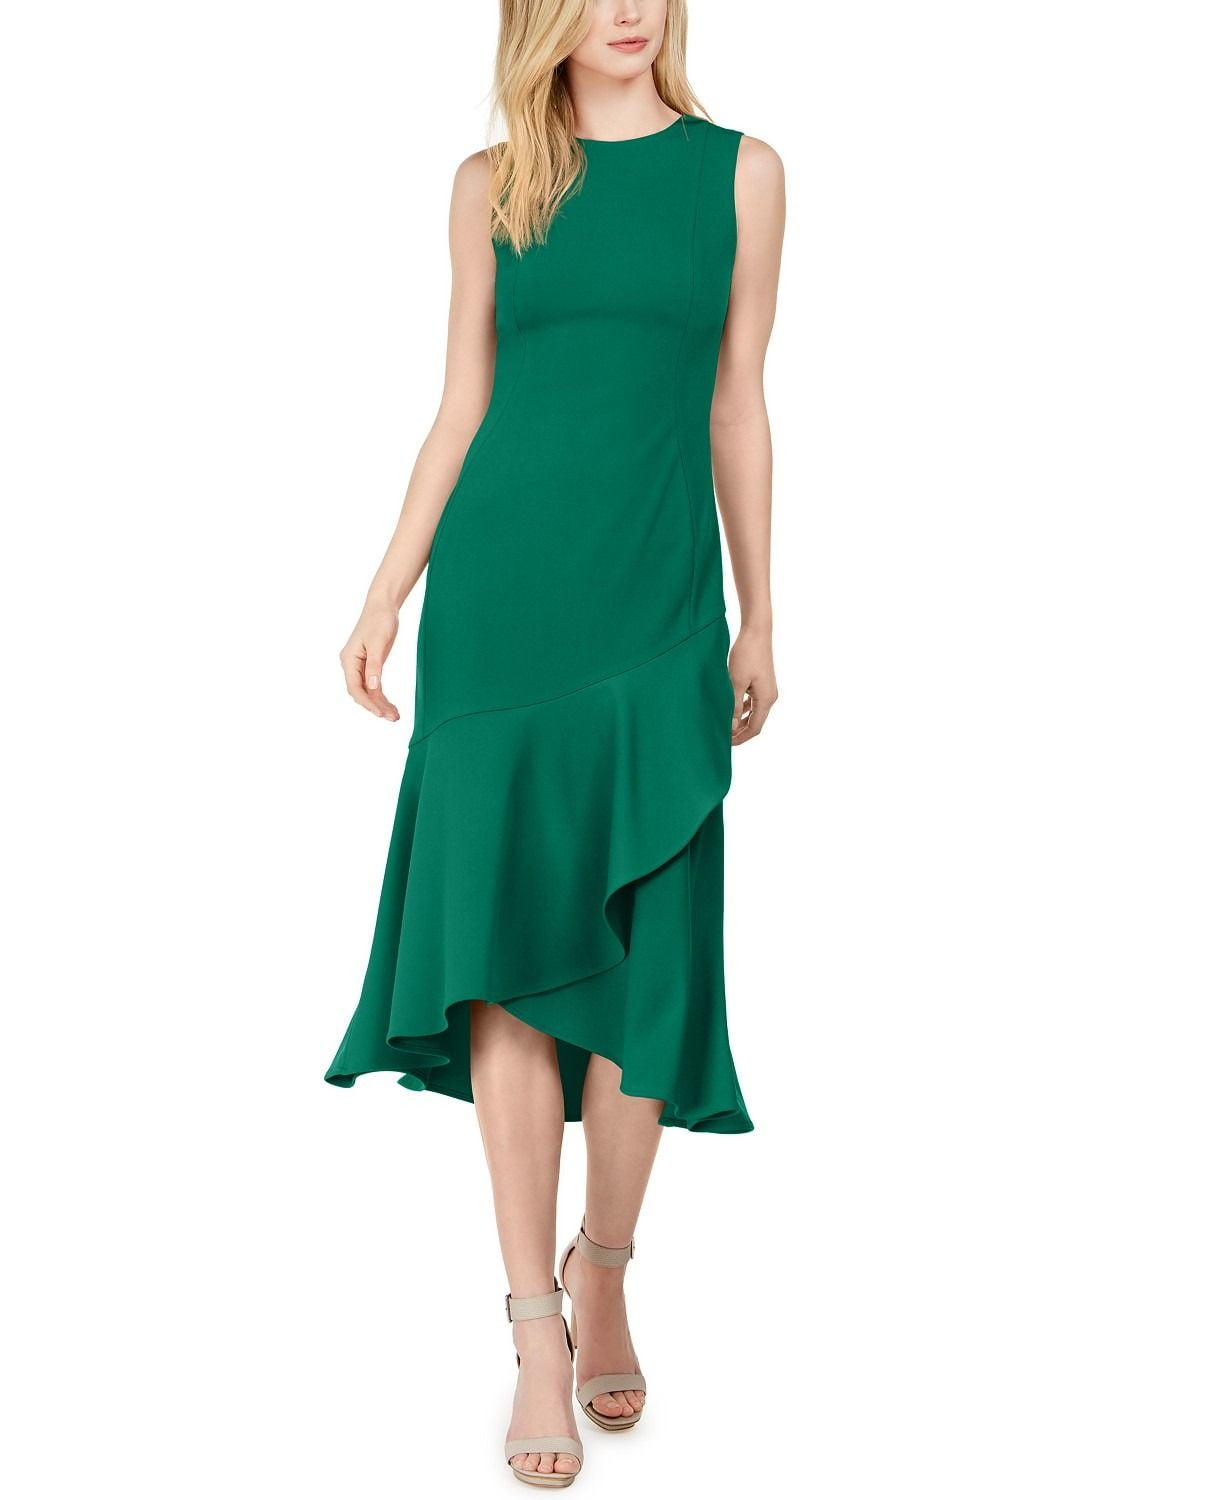 Introducir 61+ imagen calvin klein green ruffle dress